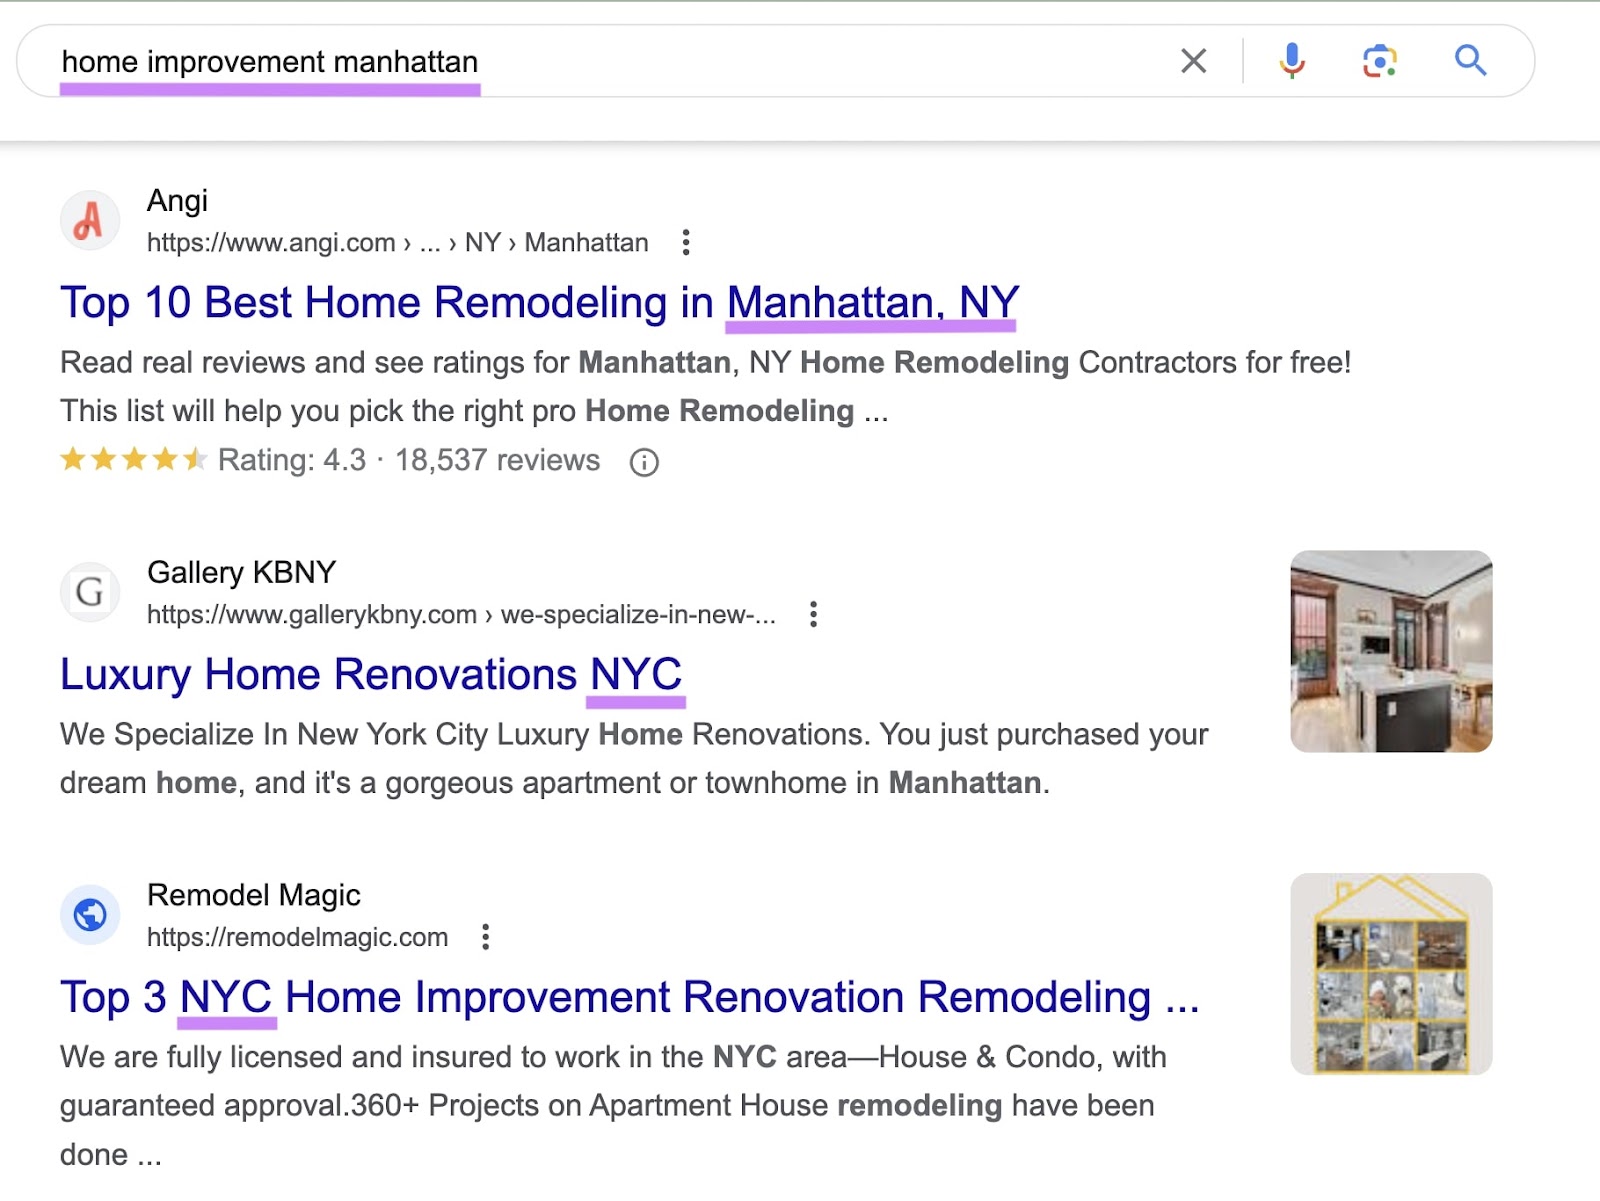 Google's SERP for "home improvement manhattan" query